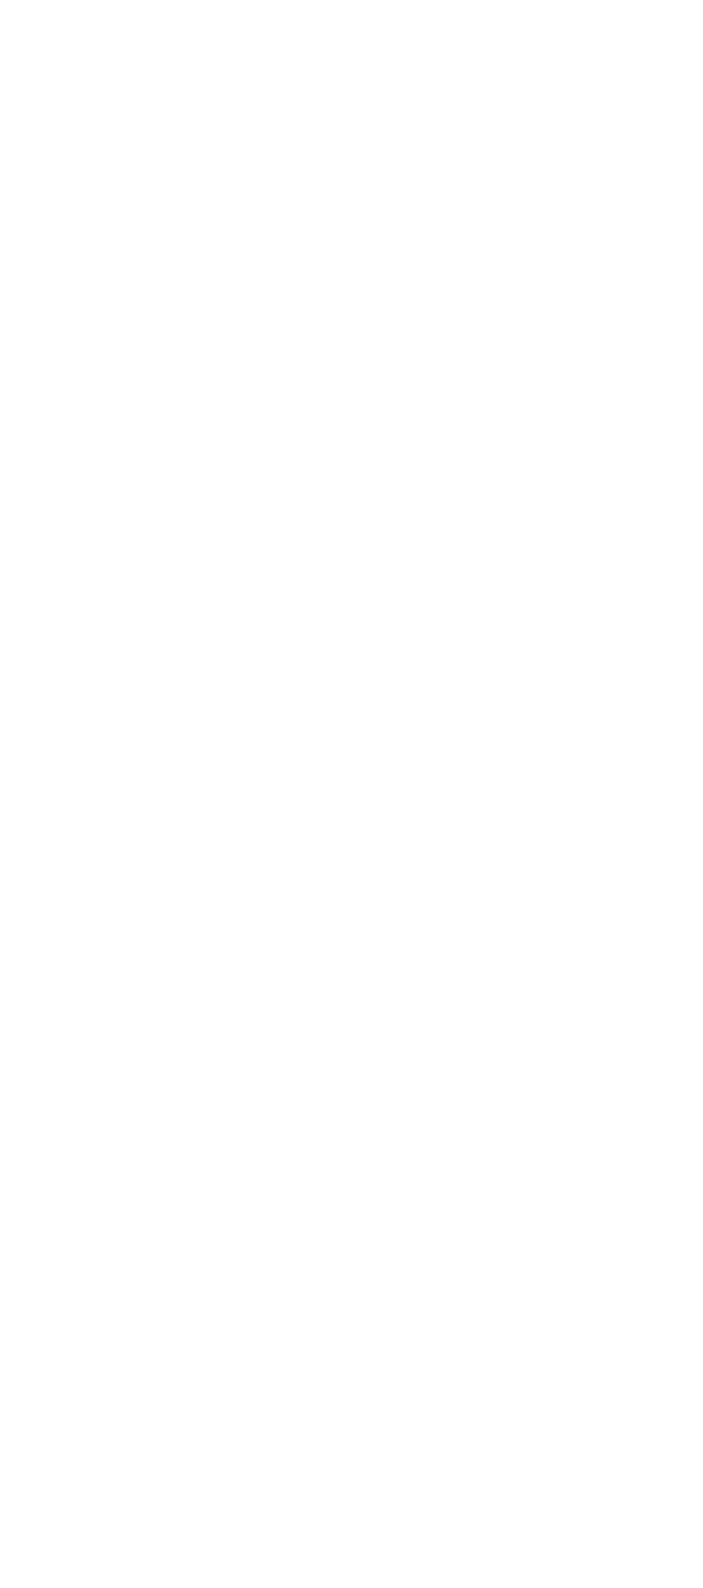 BonnArq